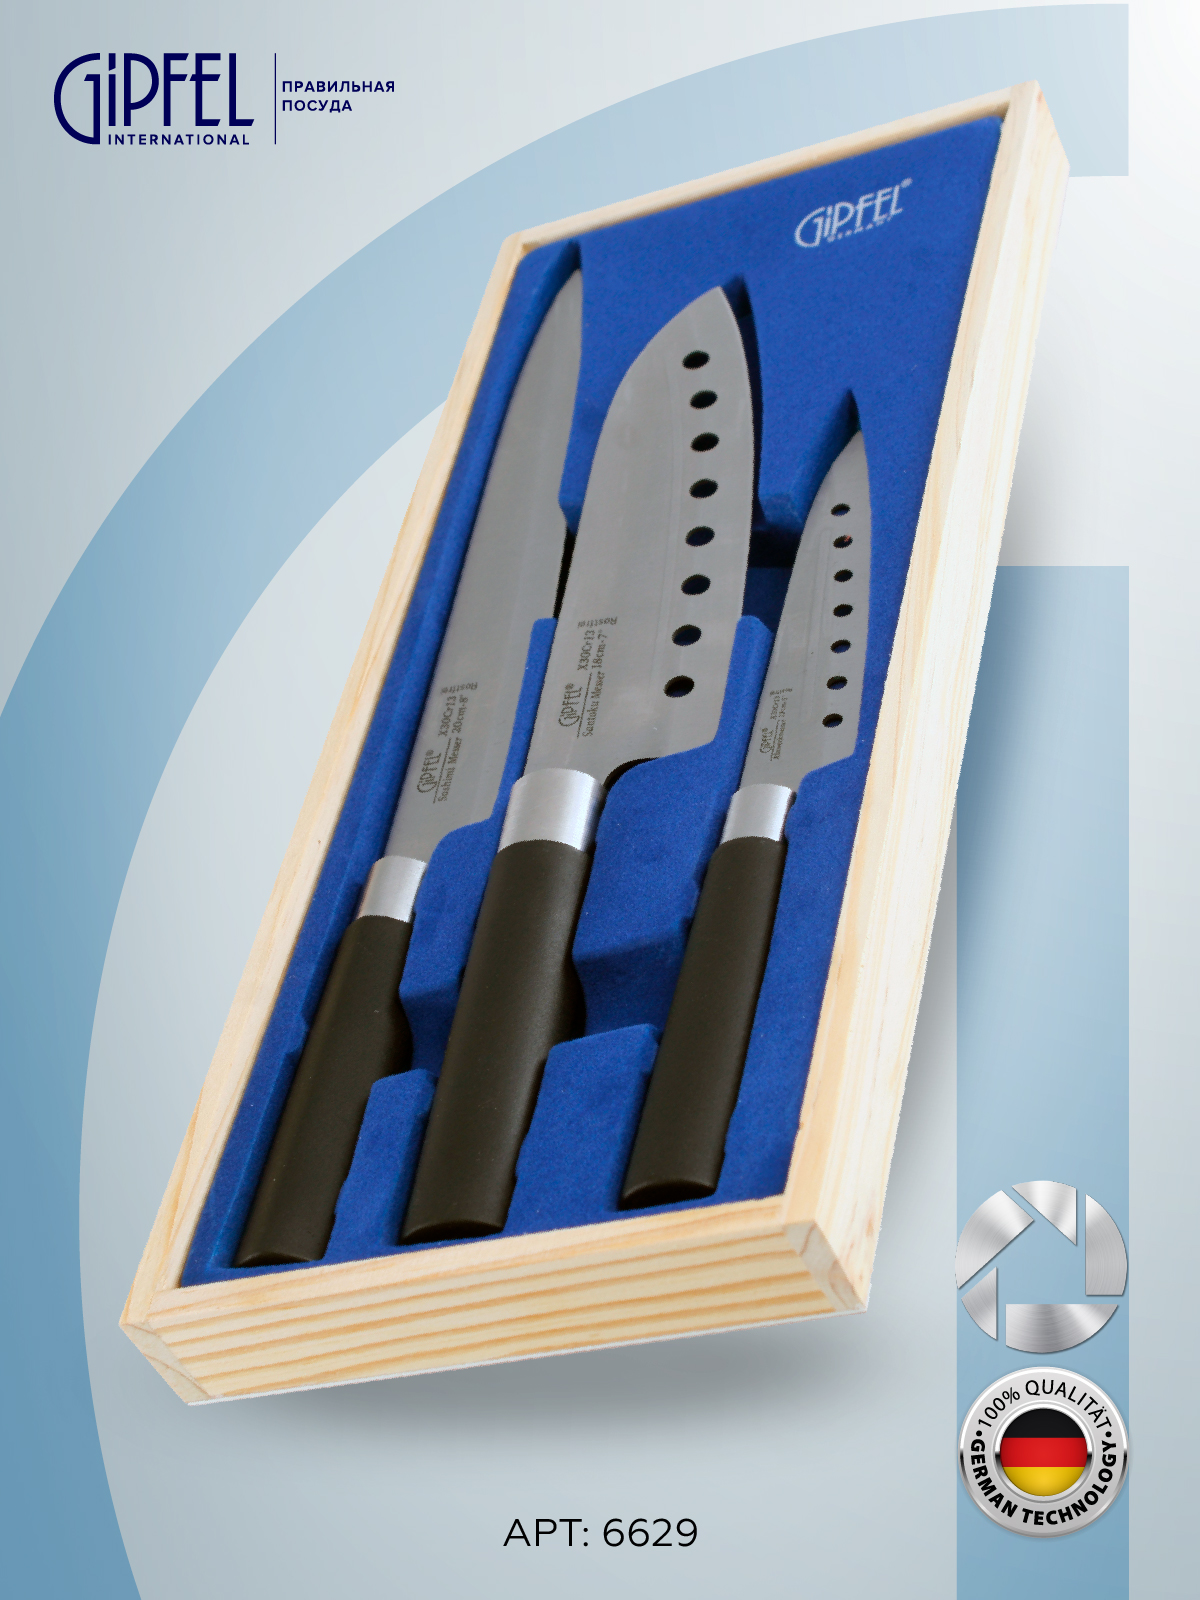 Набор ножей GIPFEL 6629 3 шт купить, цены в Москве на Мегамаркет